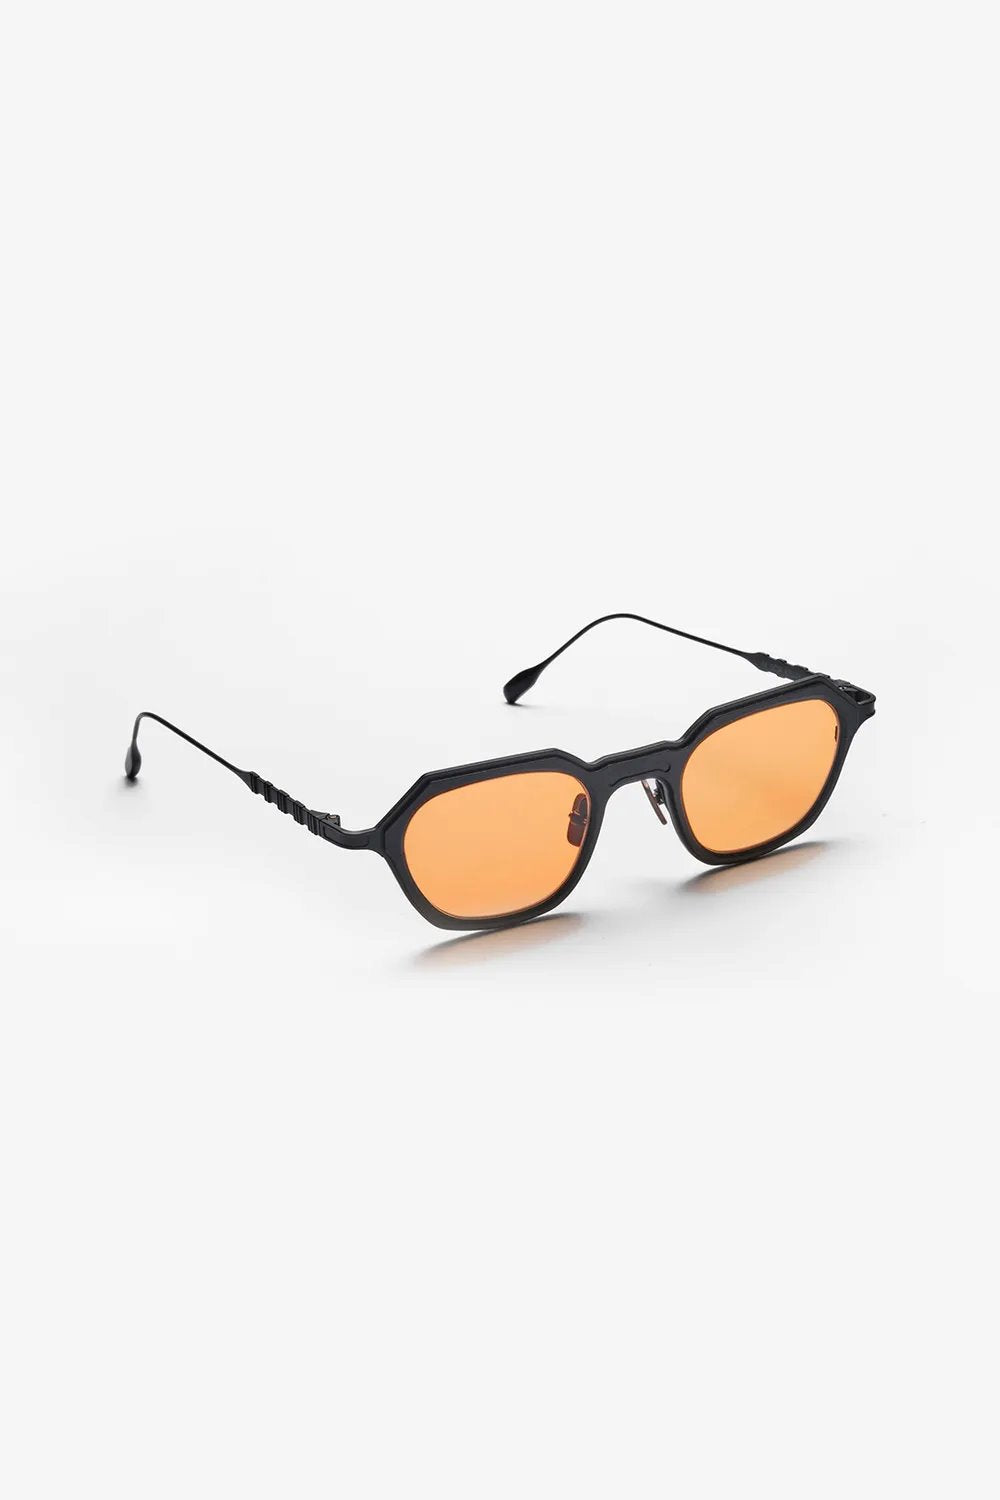 Capote - CC34 Sunglasses Capote Orange ONES 